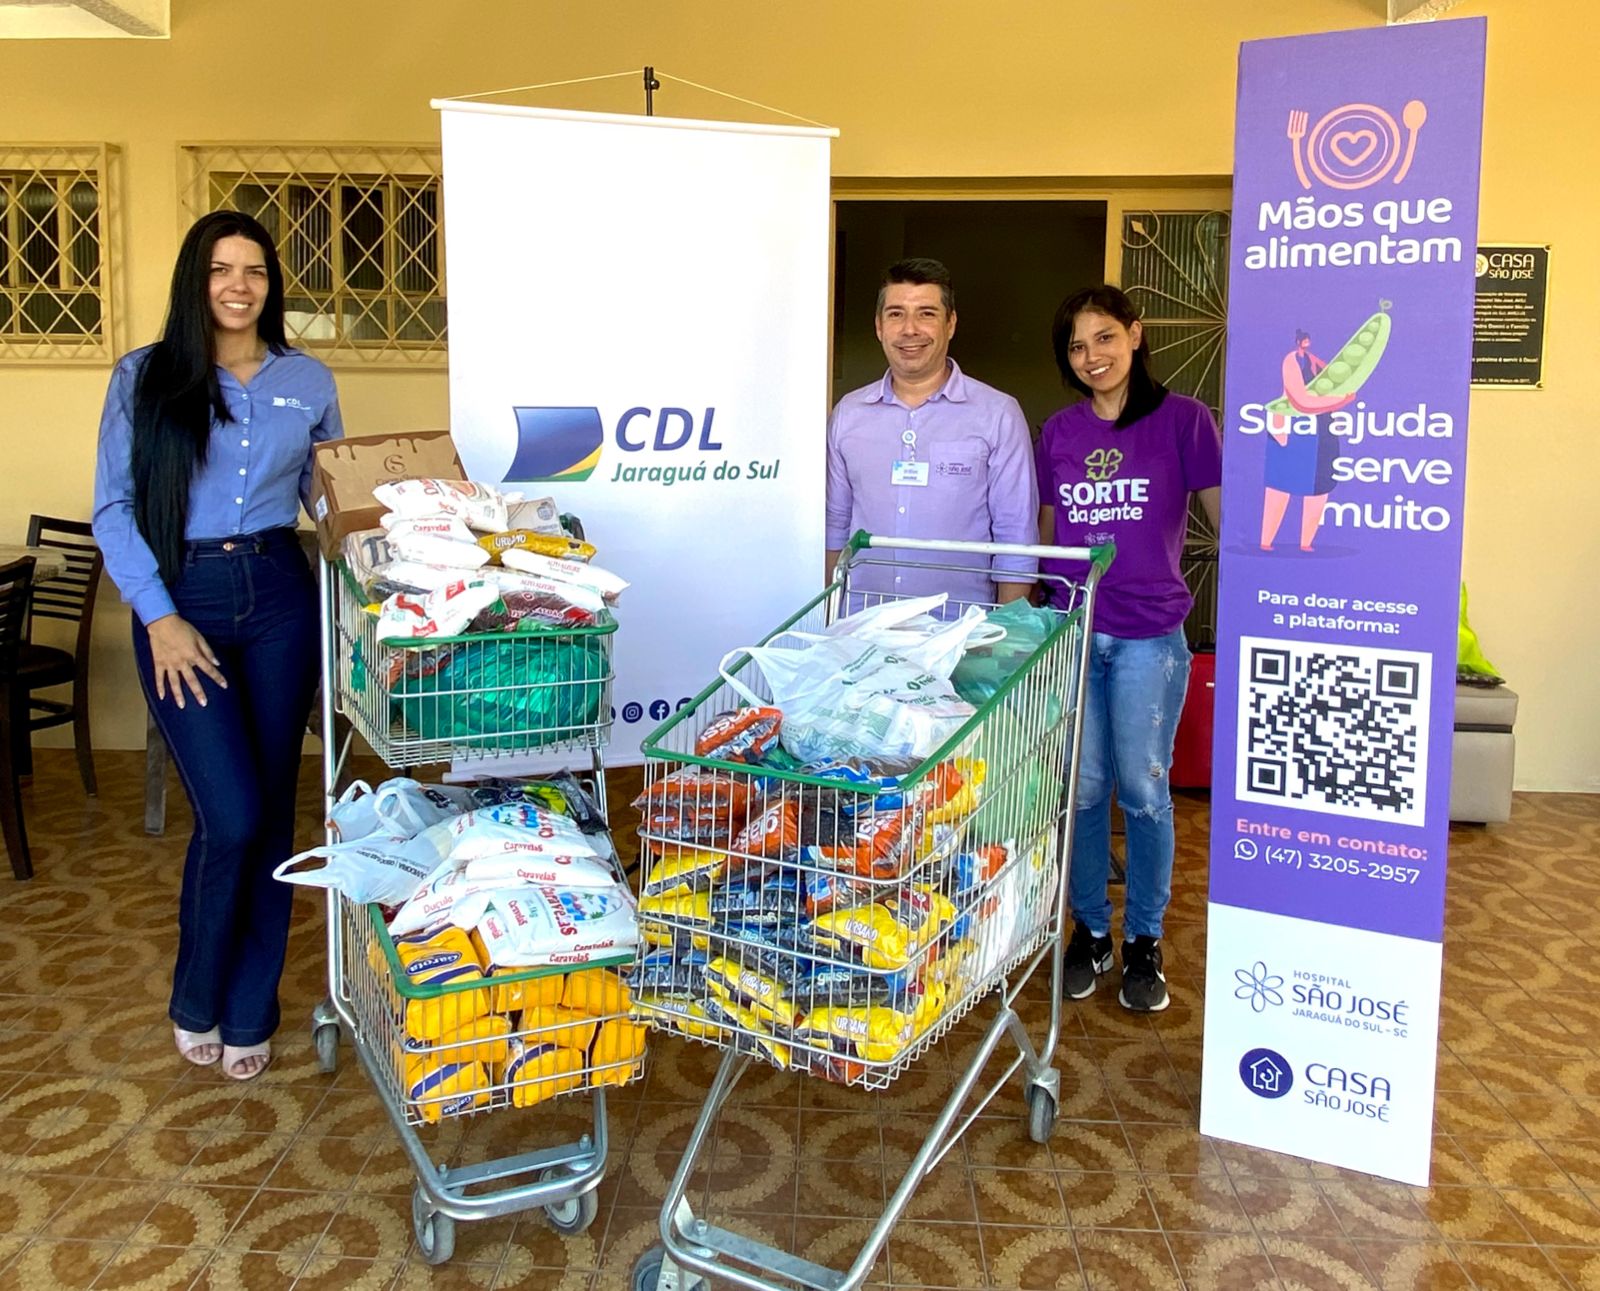 CDL faz doação de 200kg de alimento para a Casa São José